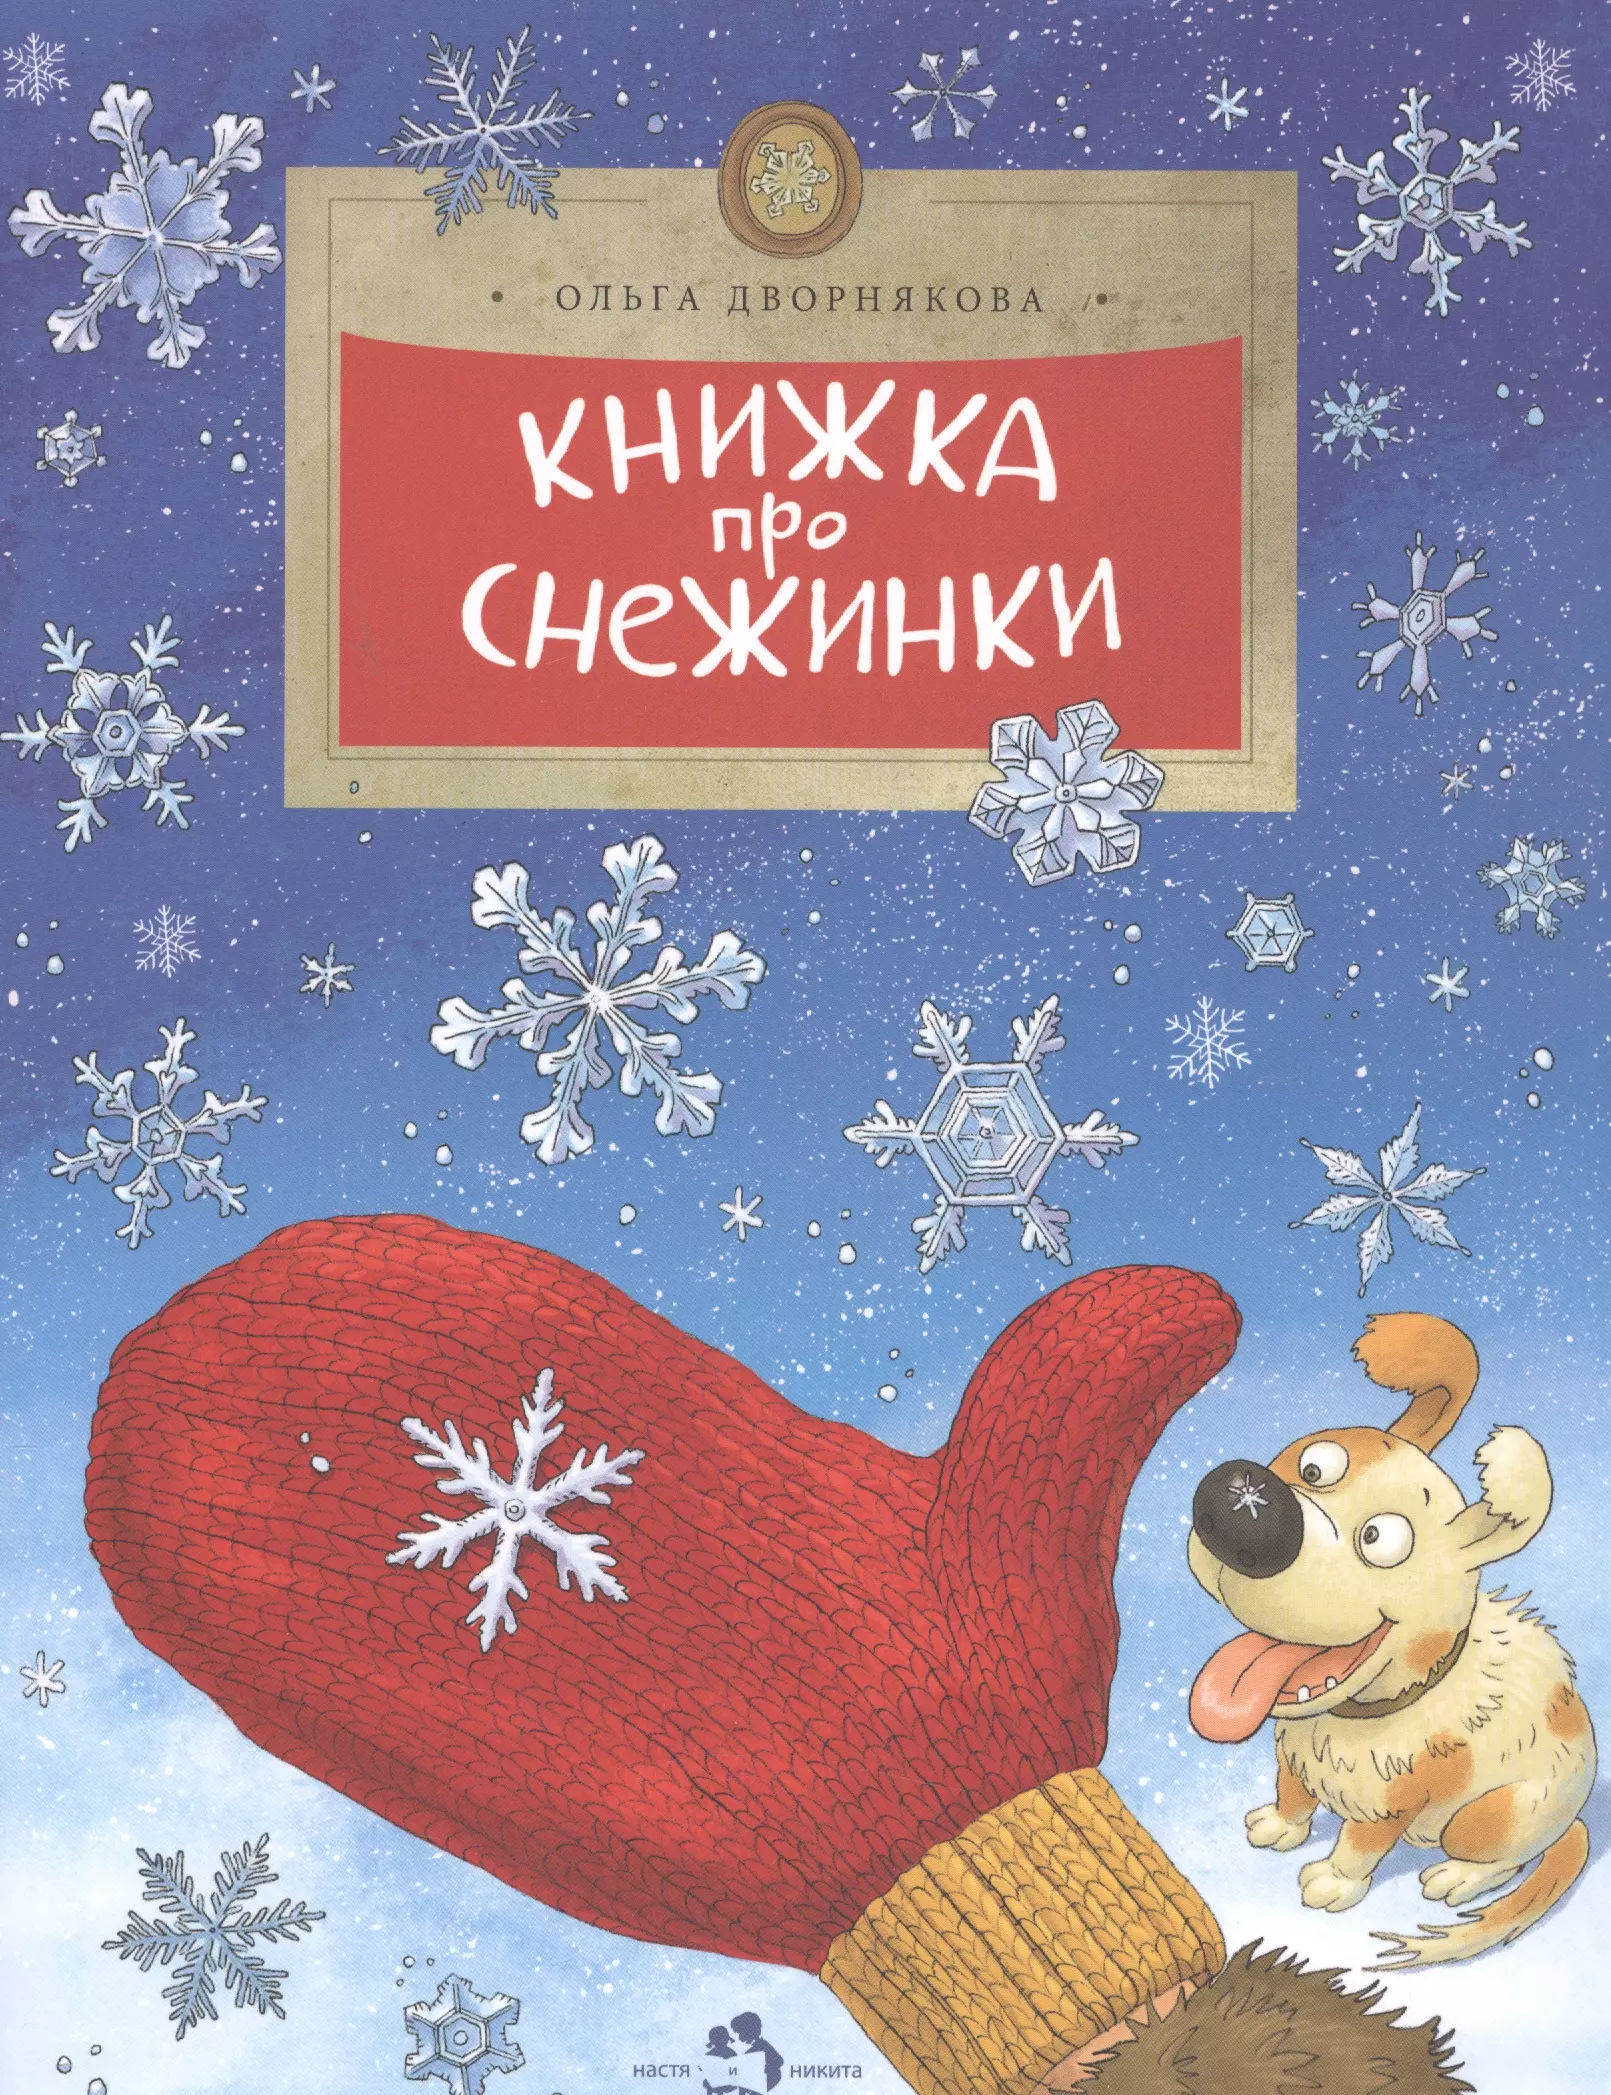 Дворнякова Ольга Викторовна - Книжка про снежинки (6+)